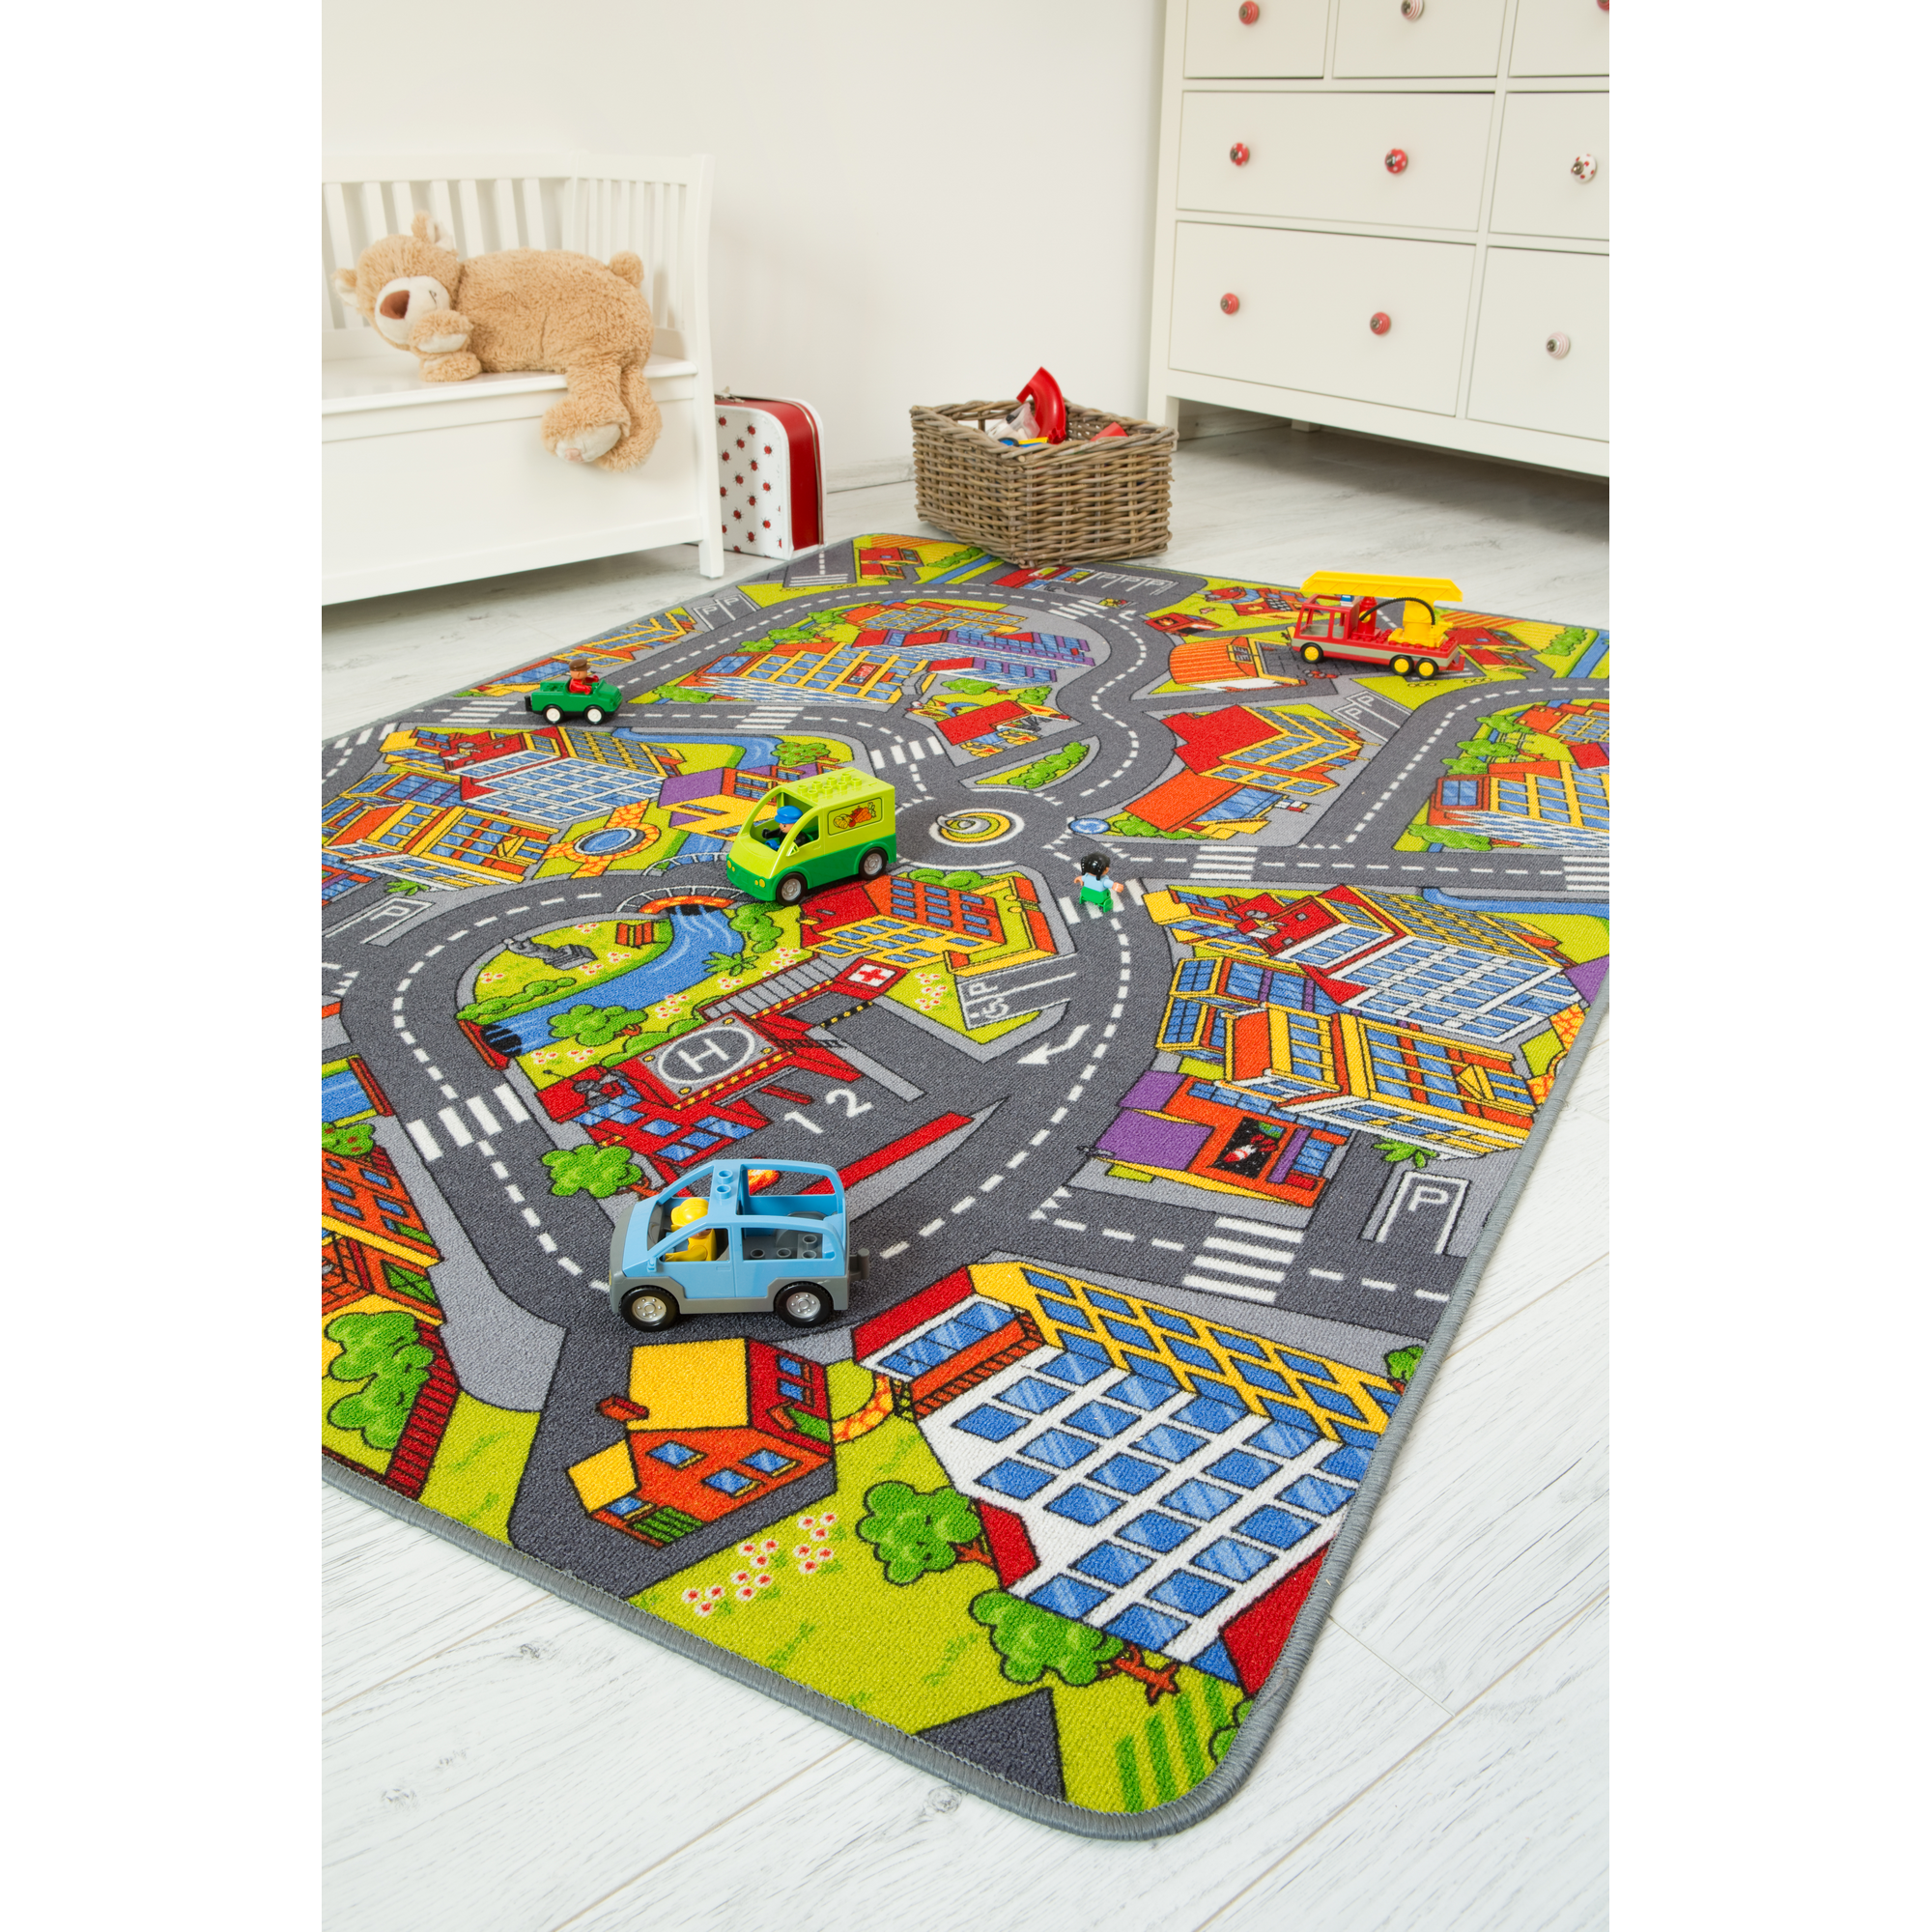 Spielteppich 'Straße' bunt 165 x 100 cm + product picture